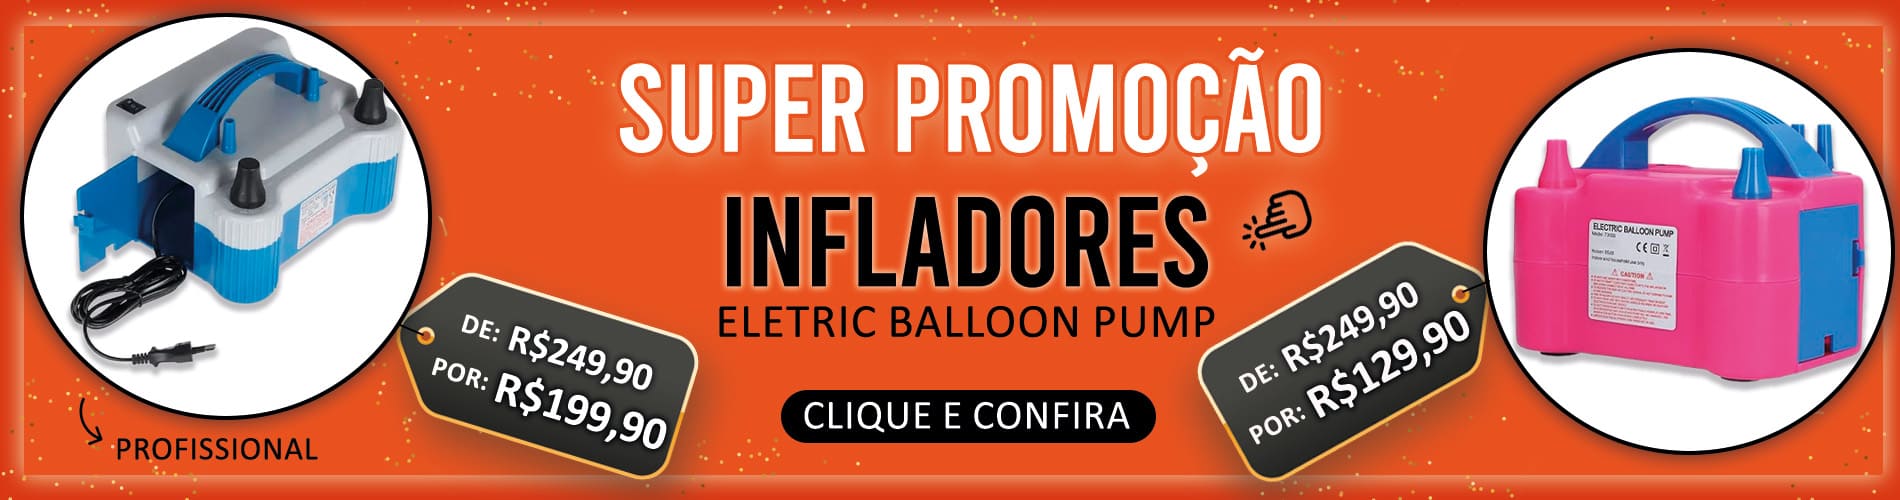 Banner promoção infladores